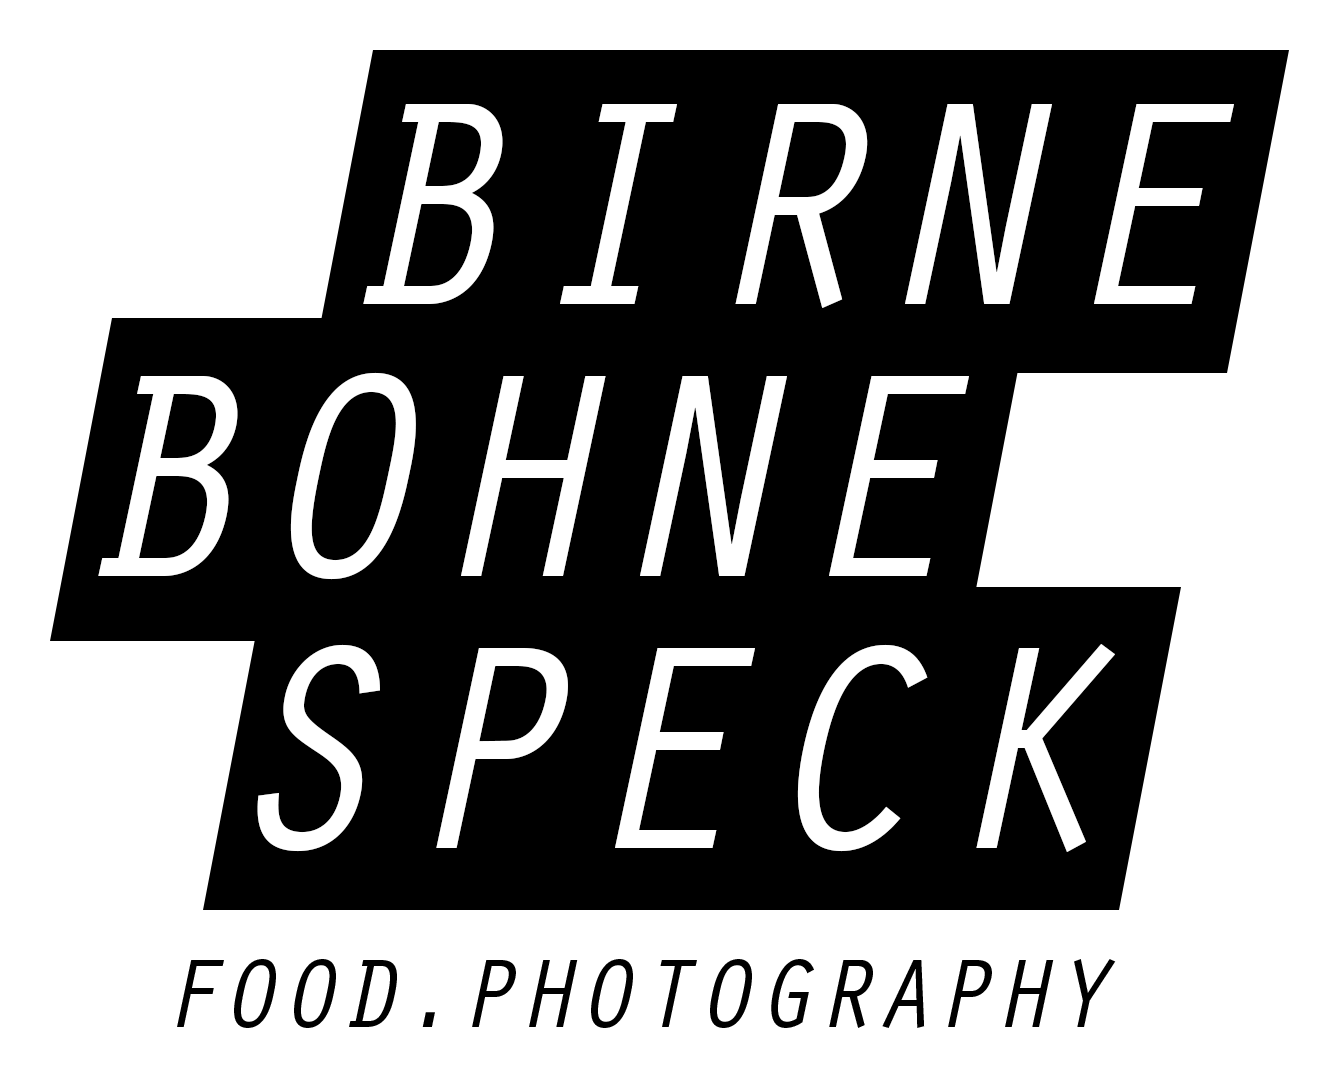 BIRNE BOHNE SPECK